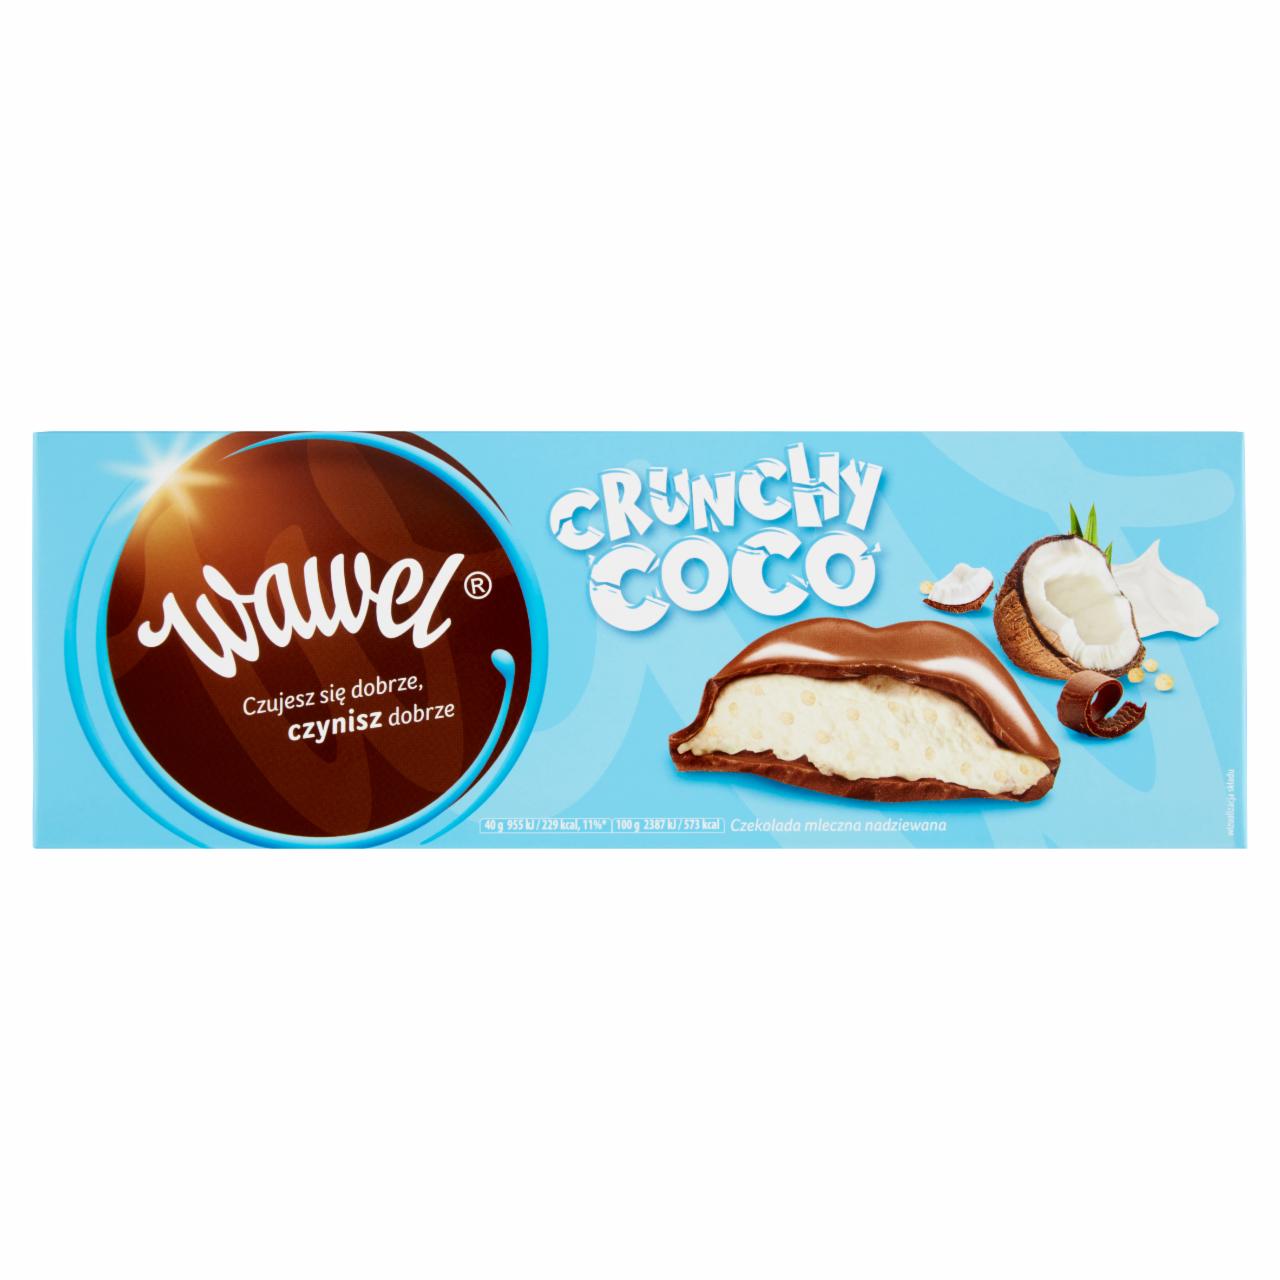 Zdjęcia - Wawel Crunchy Coco Czekolada mleczna nadziewana 278 g